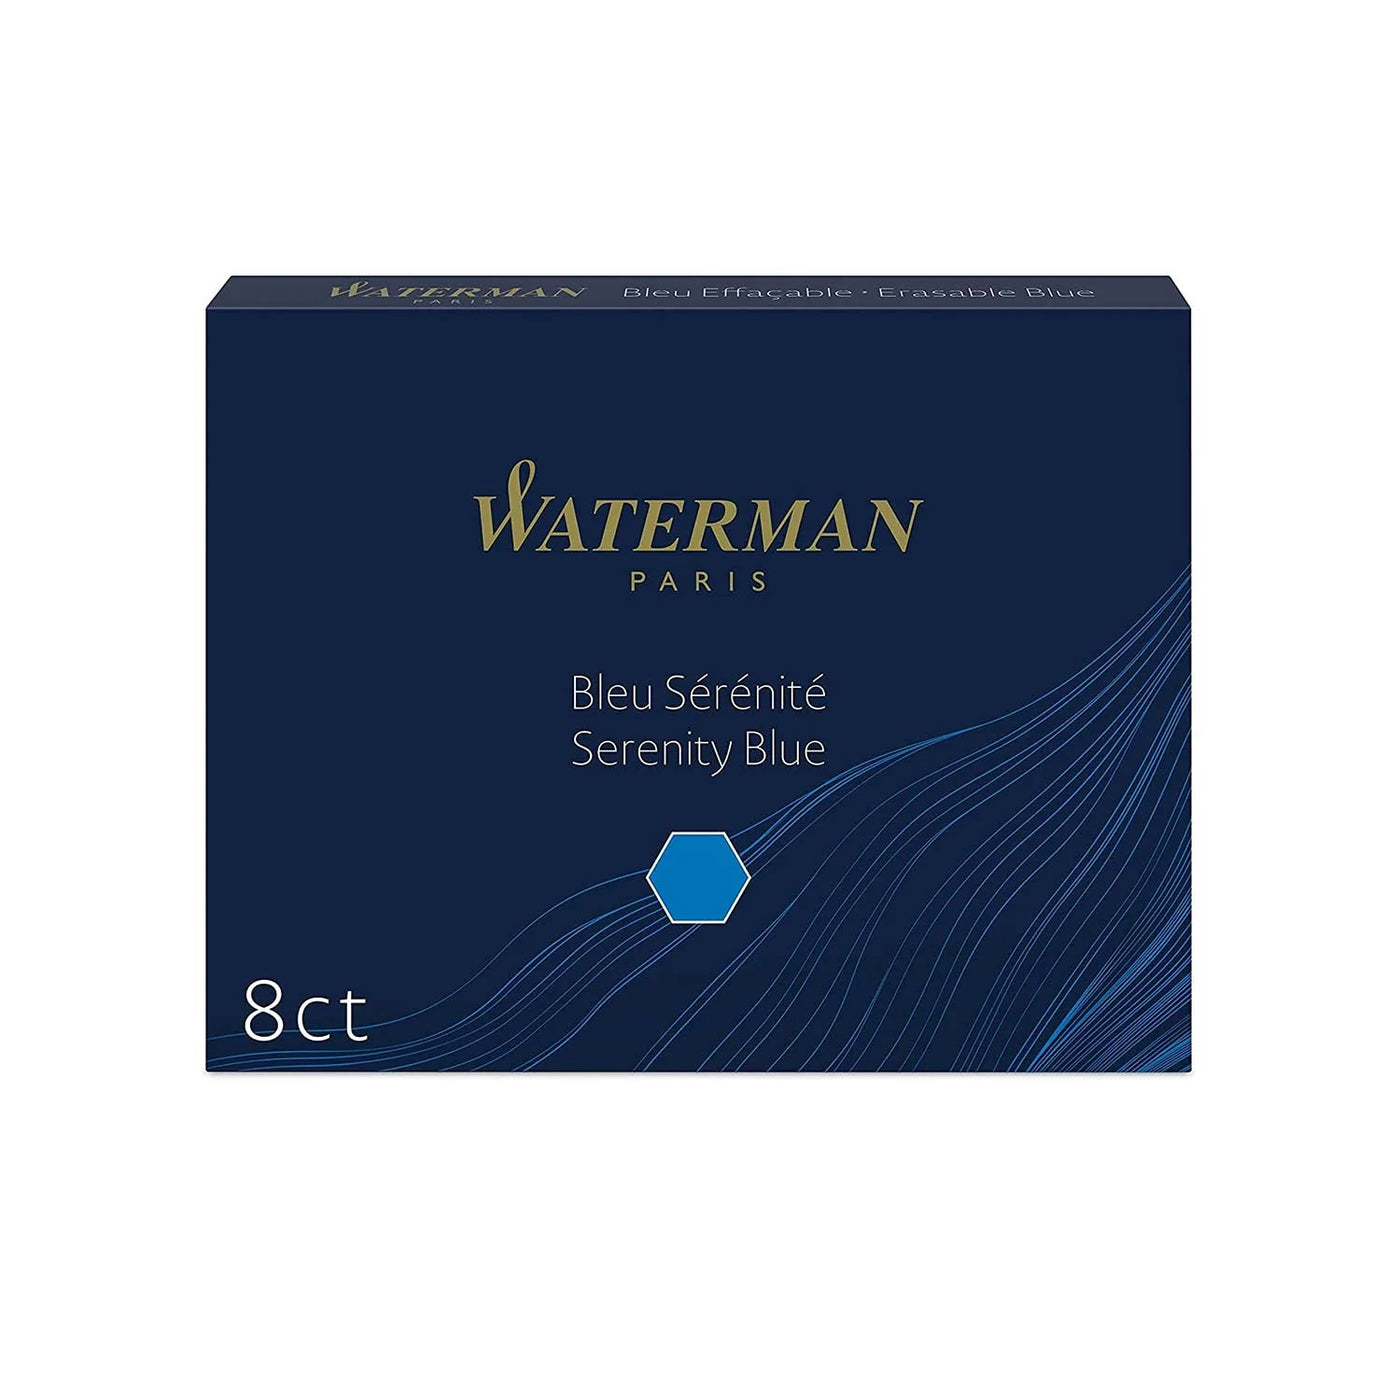 Waterman Long Ink Cartridge Pack of 8 - Serenity Blue